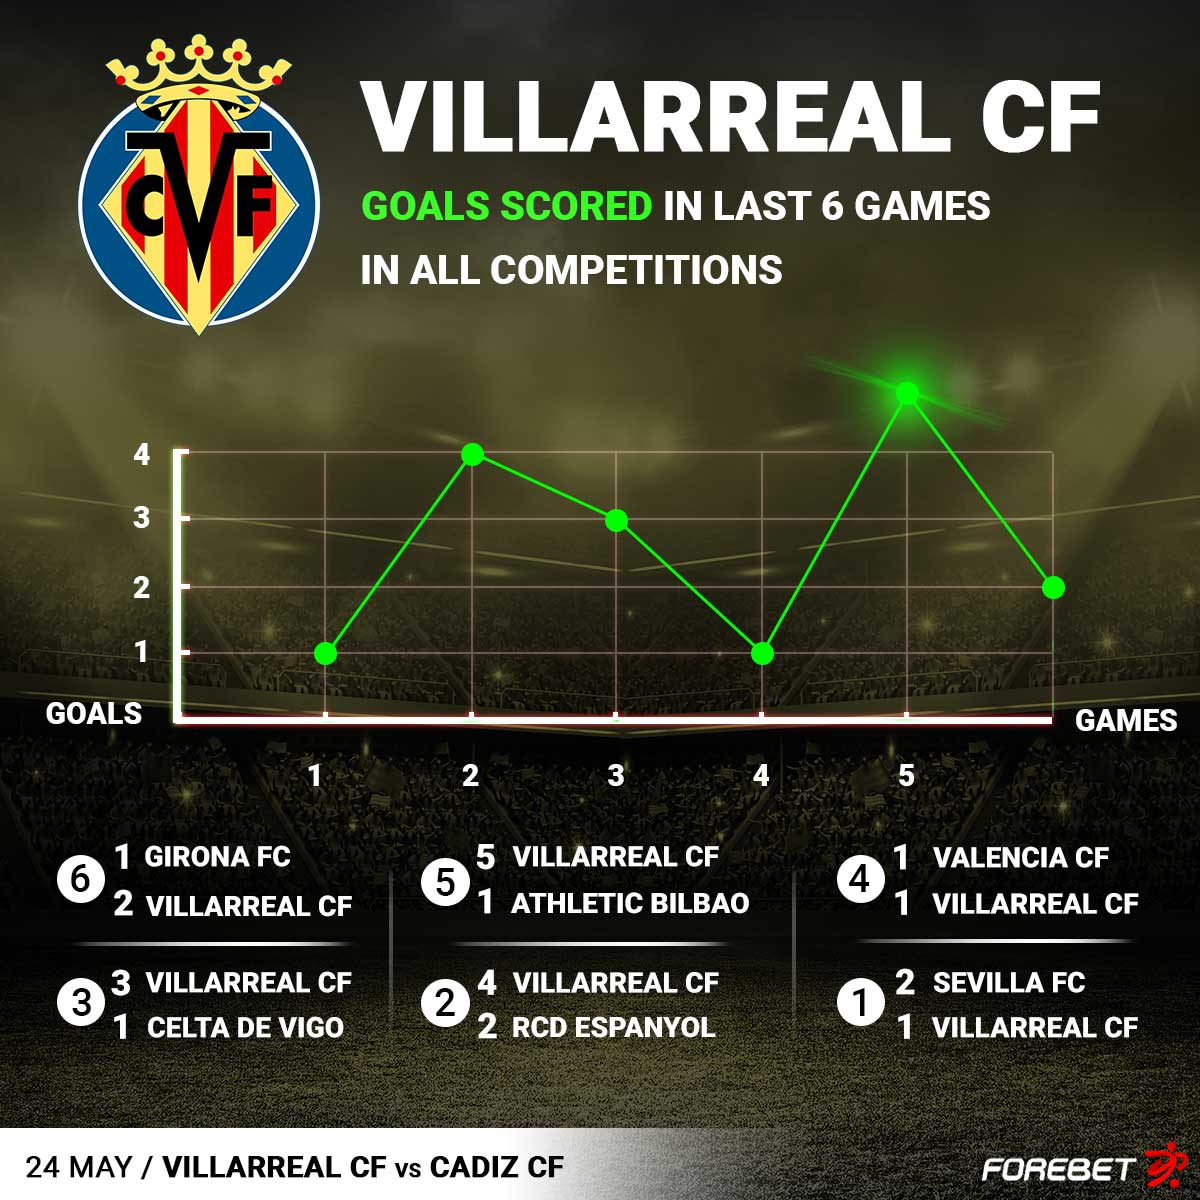 Villarreal CF 🆚 Cadiz CF
24/5/2023 18:30

📊 More predictions and stats: bit.ly/3pXearj

#LaLigaSantander #VillarrealCádiz #forebet